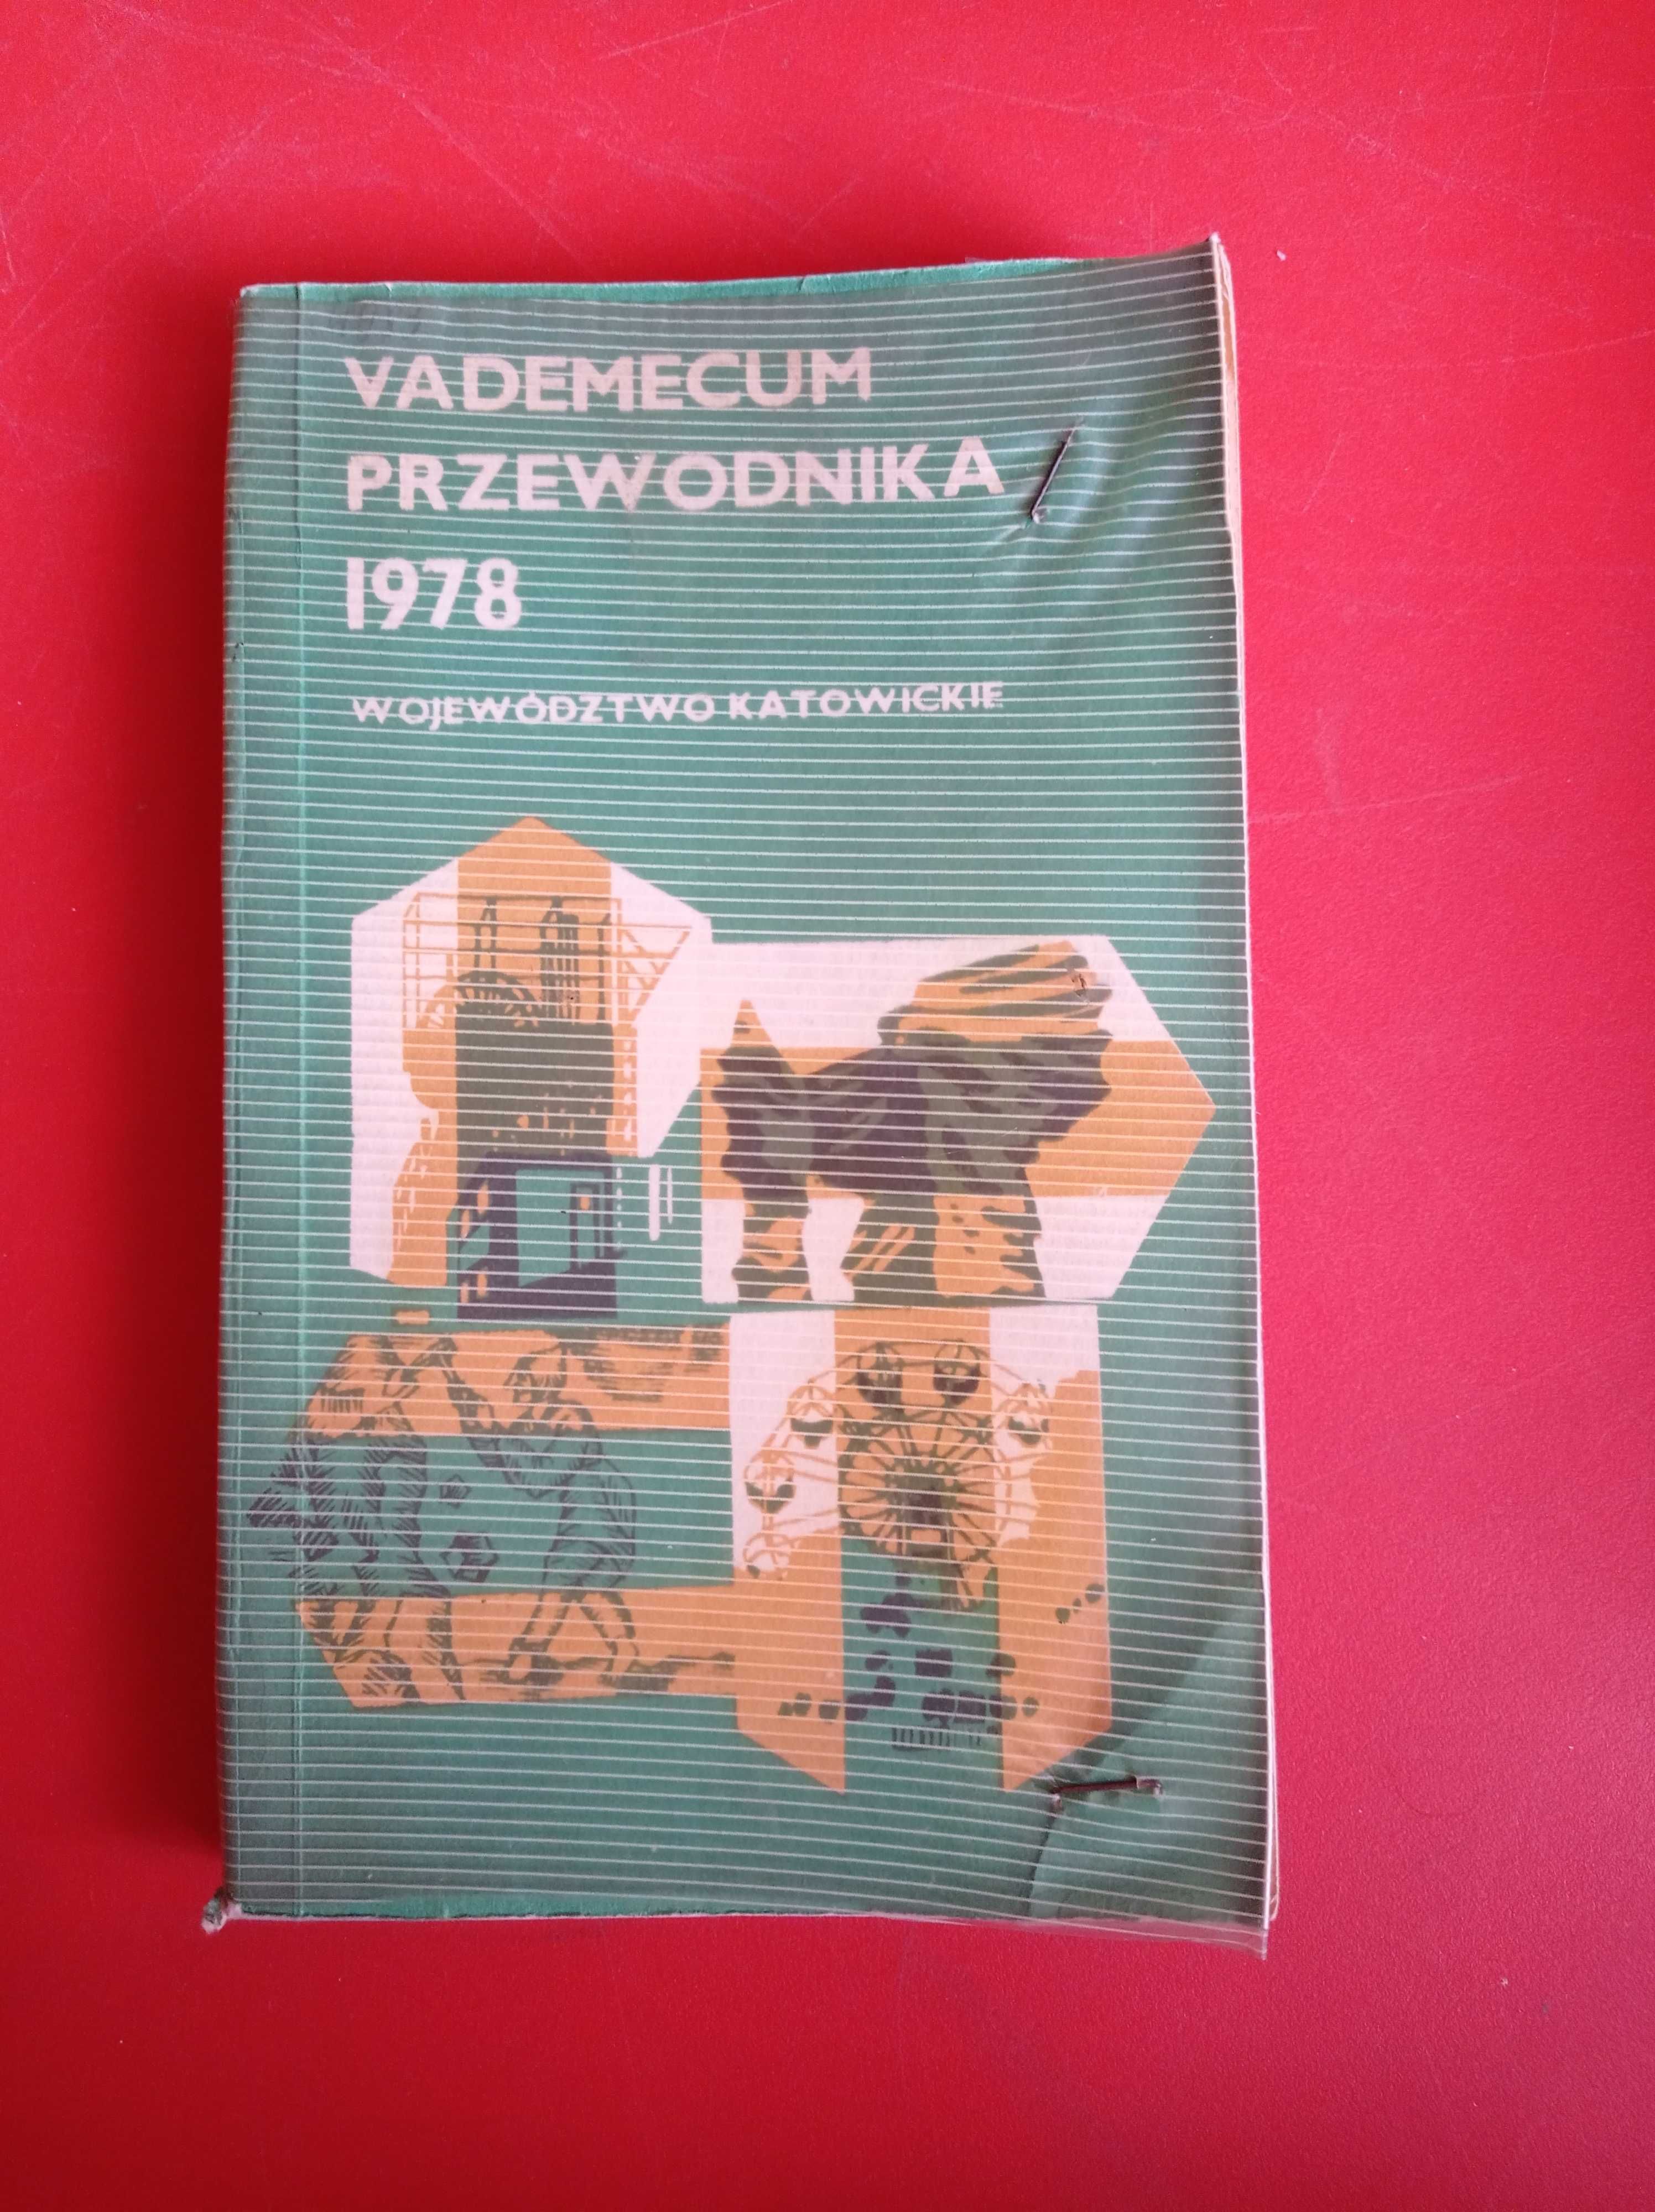 Vademecum Przewodnika Województwo katowickie 1978